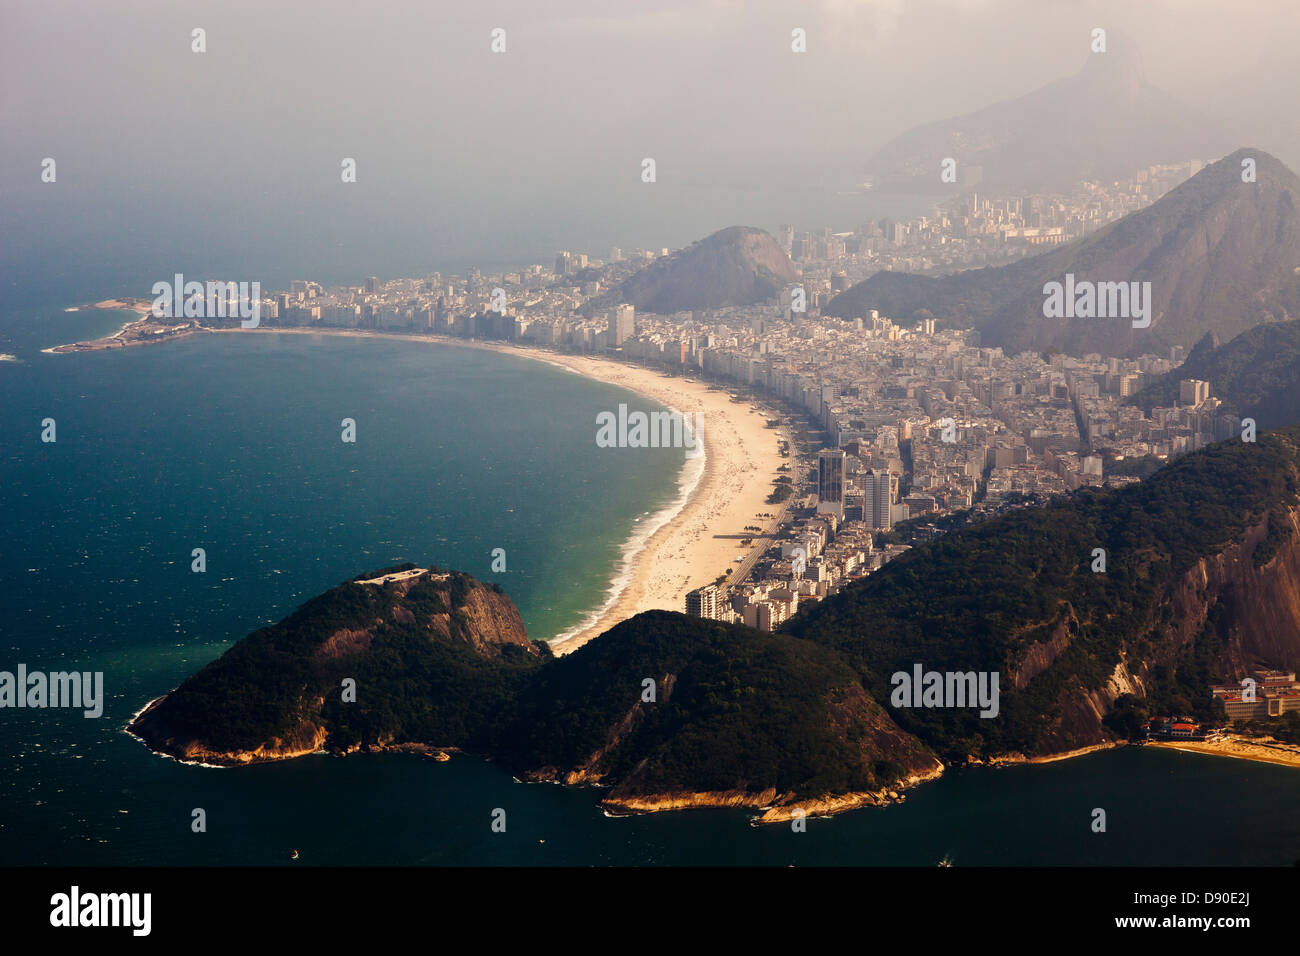 Vue aérienne de la plage et du quartier de Copacabana le matin brumeux - niveau élevé d'humidité dans l'air. Rio de Janeiro, Brésil. Banque D'Images